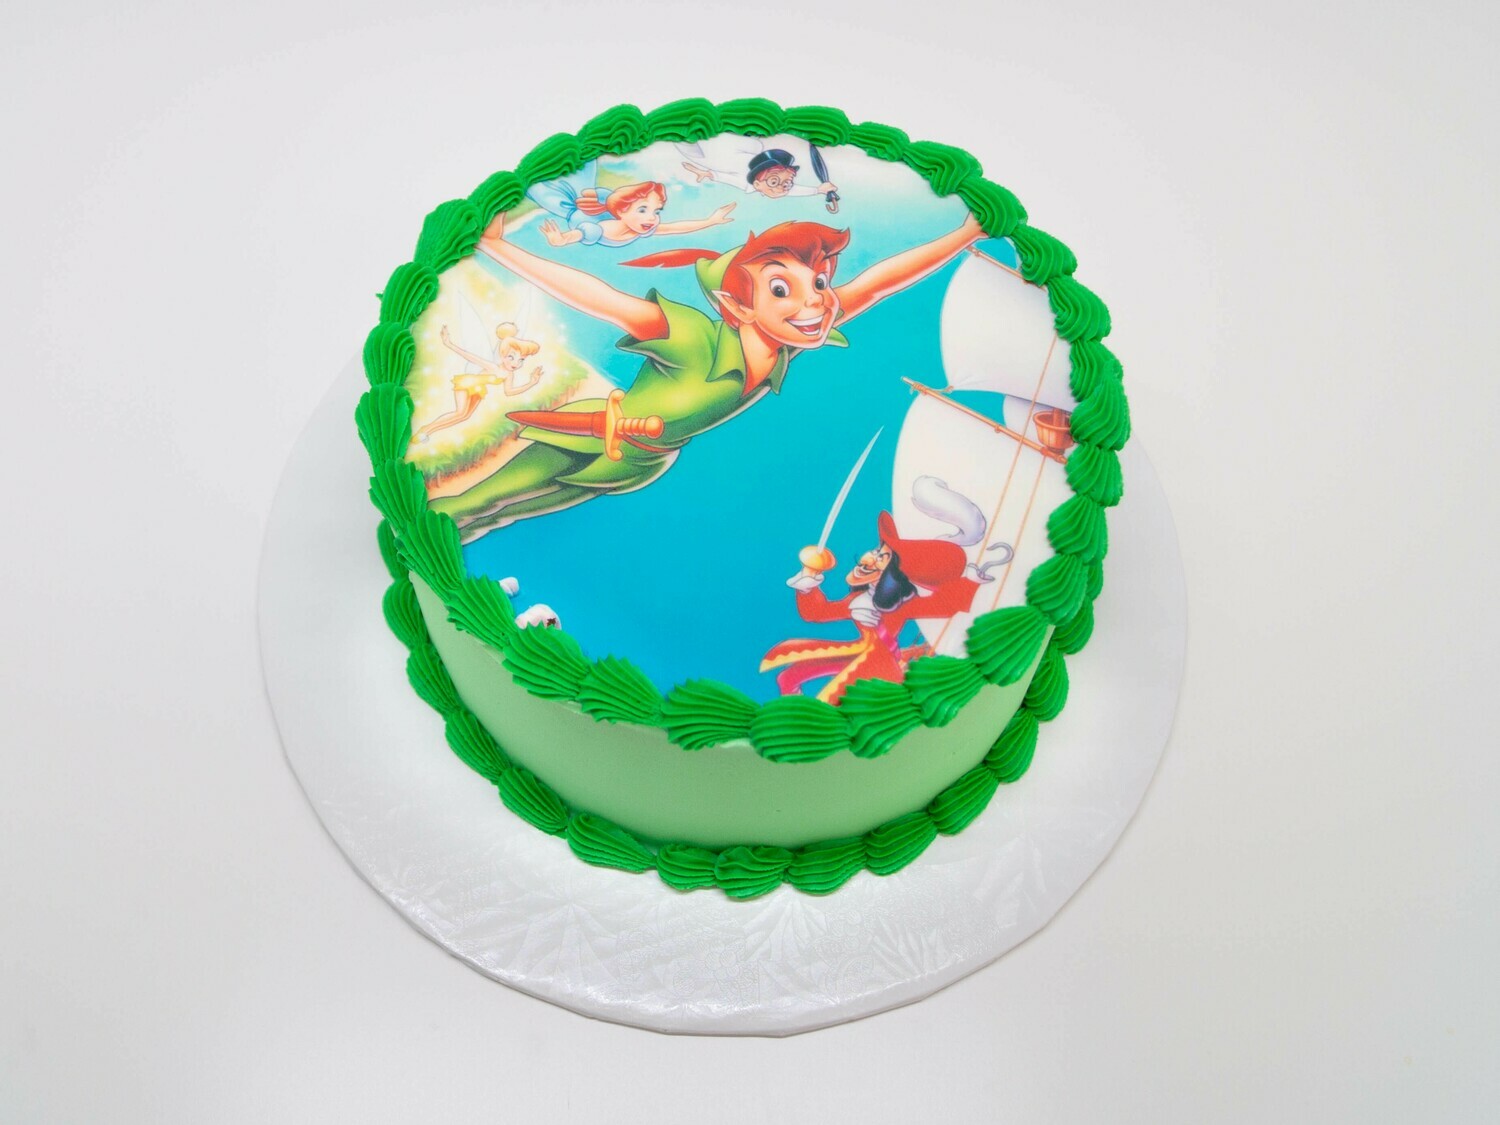 Peter Pan Image Cake